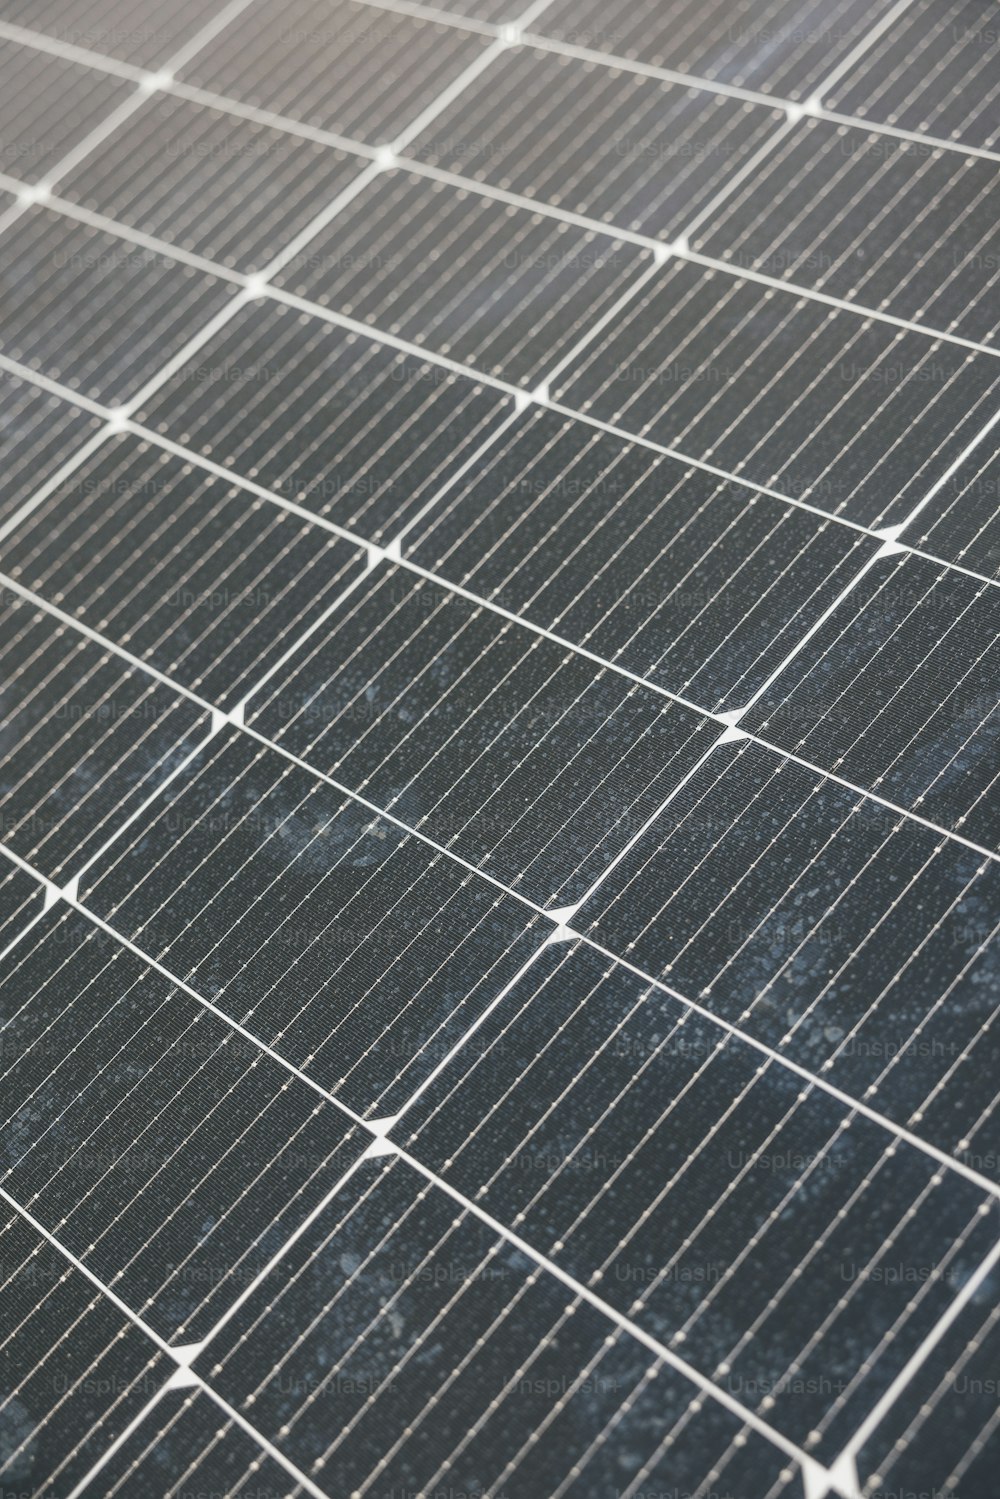 um close up de um painel solar no chão